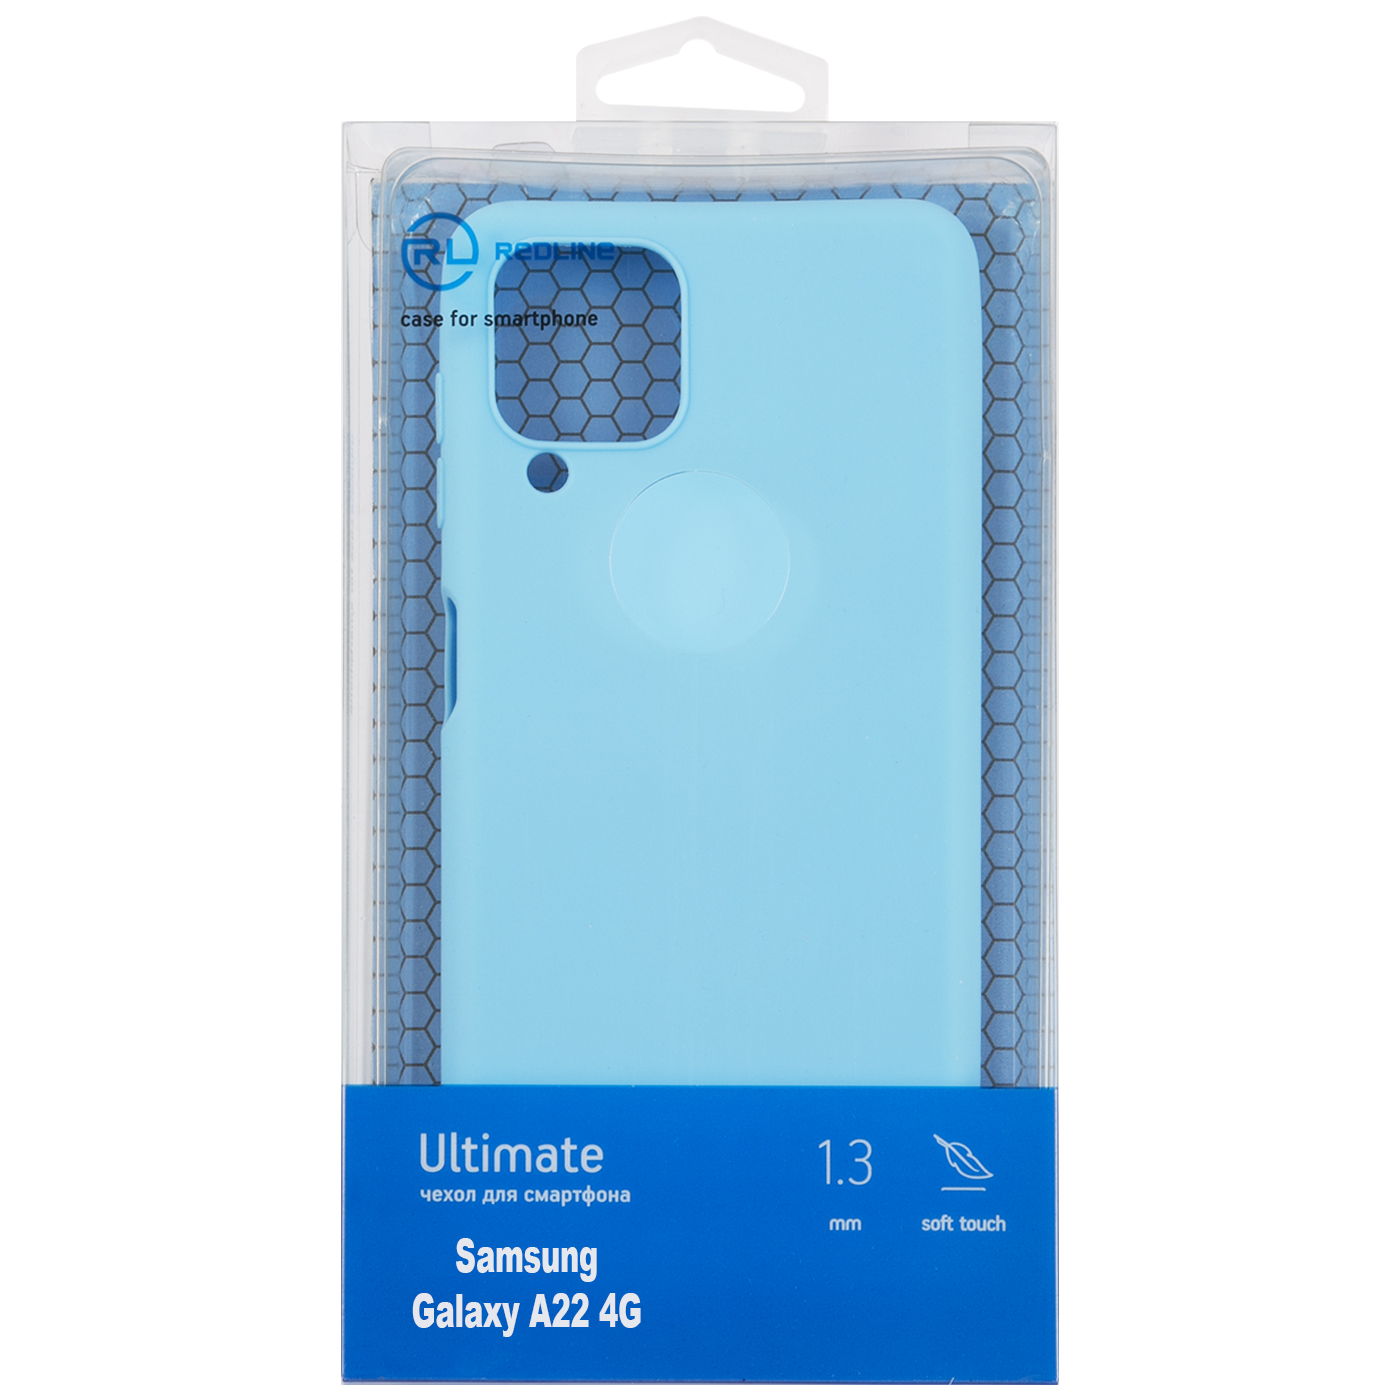 Чехол защитный Red Line Ultimate для Samsung Galaxy A22 4G, голубой УТ000025028 чехол red line для samsung galaxy a22 4g прозрачный